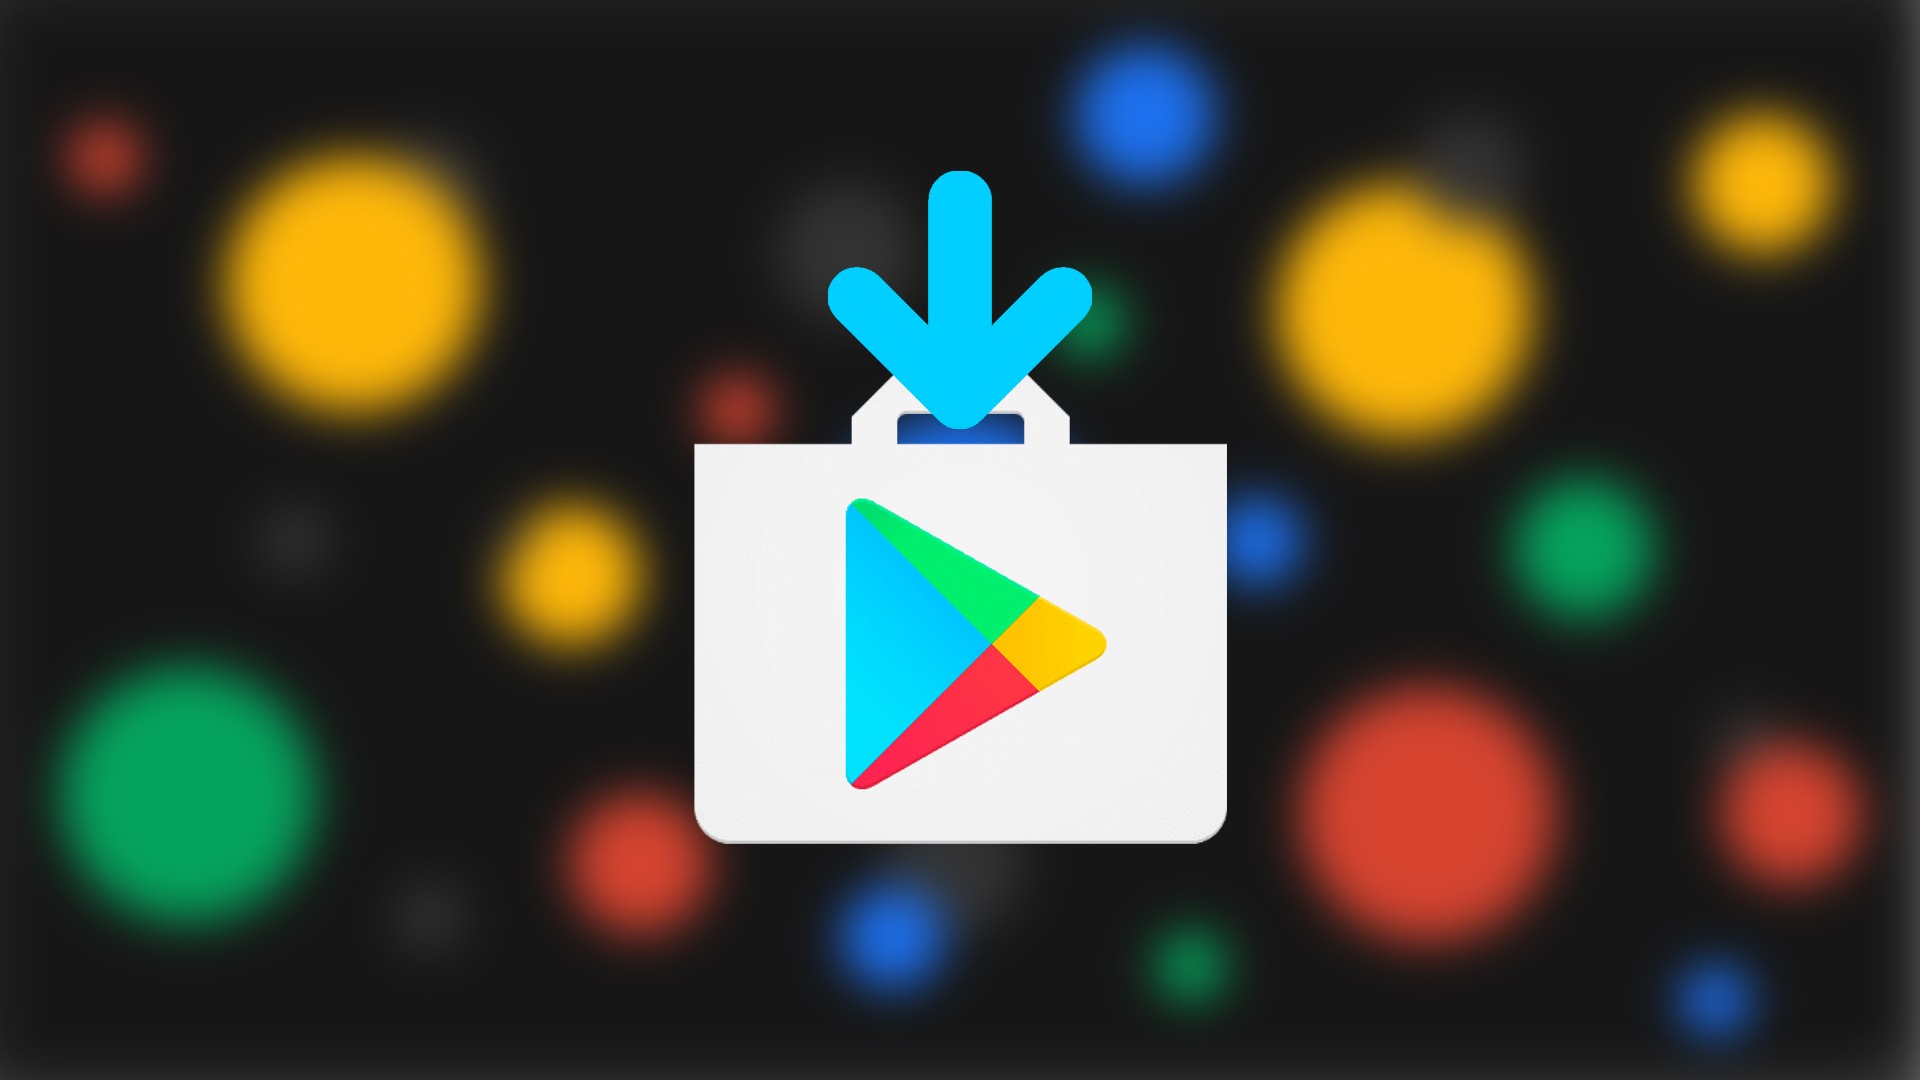 Faça Sua Moda – Apps no Google Play